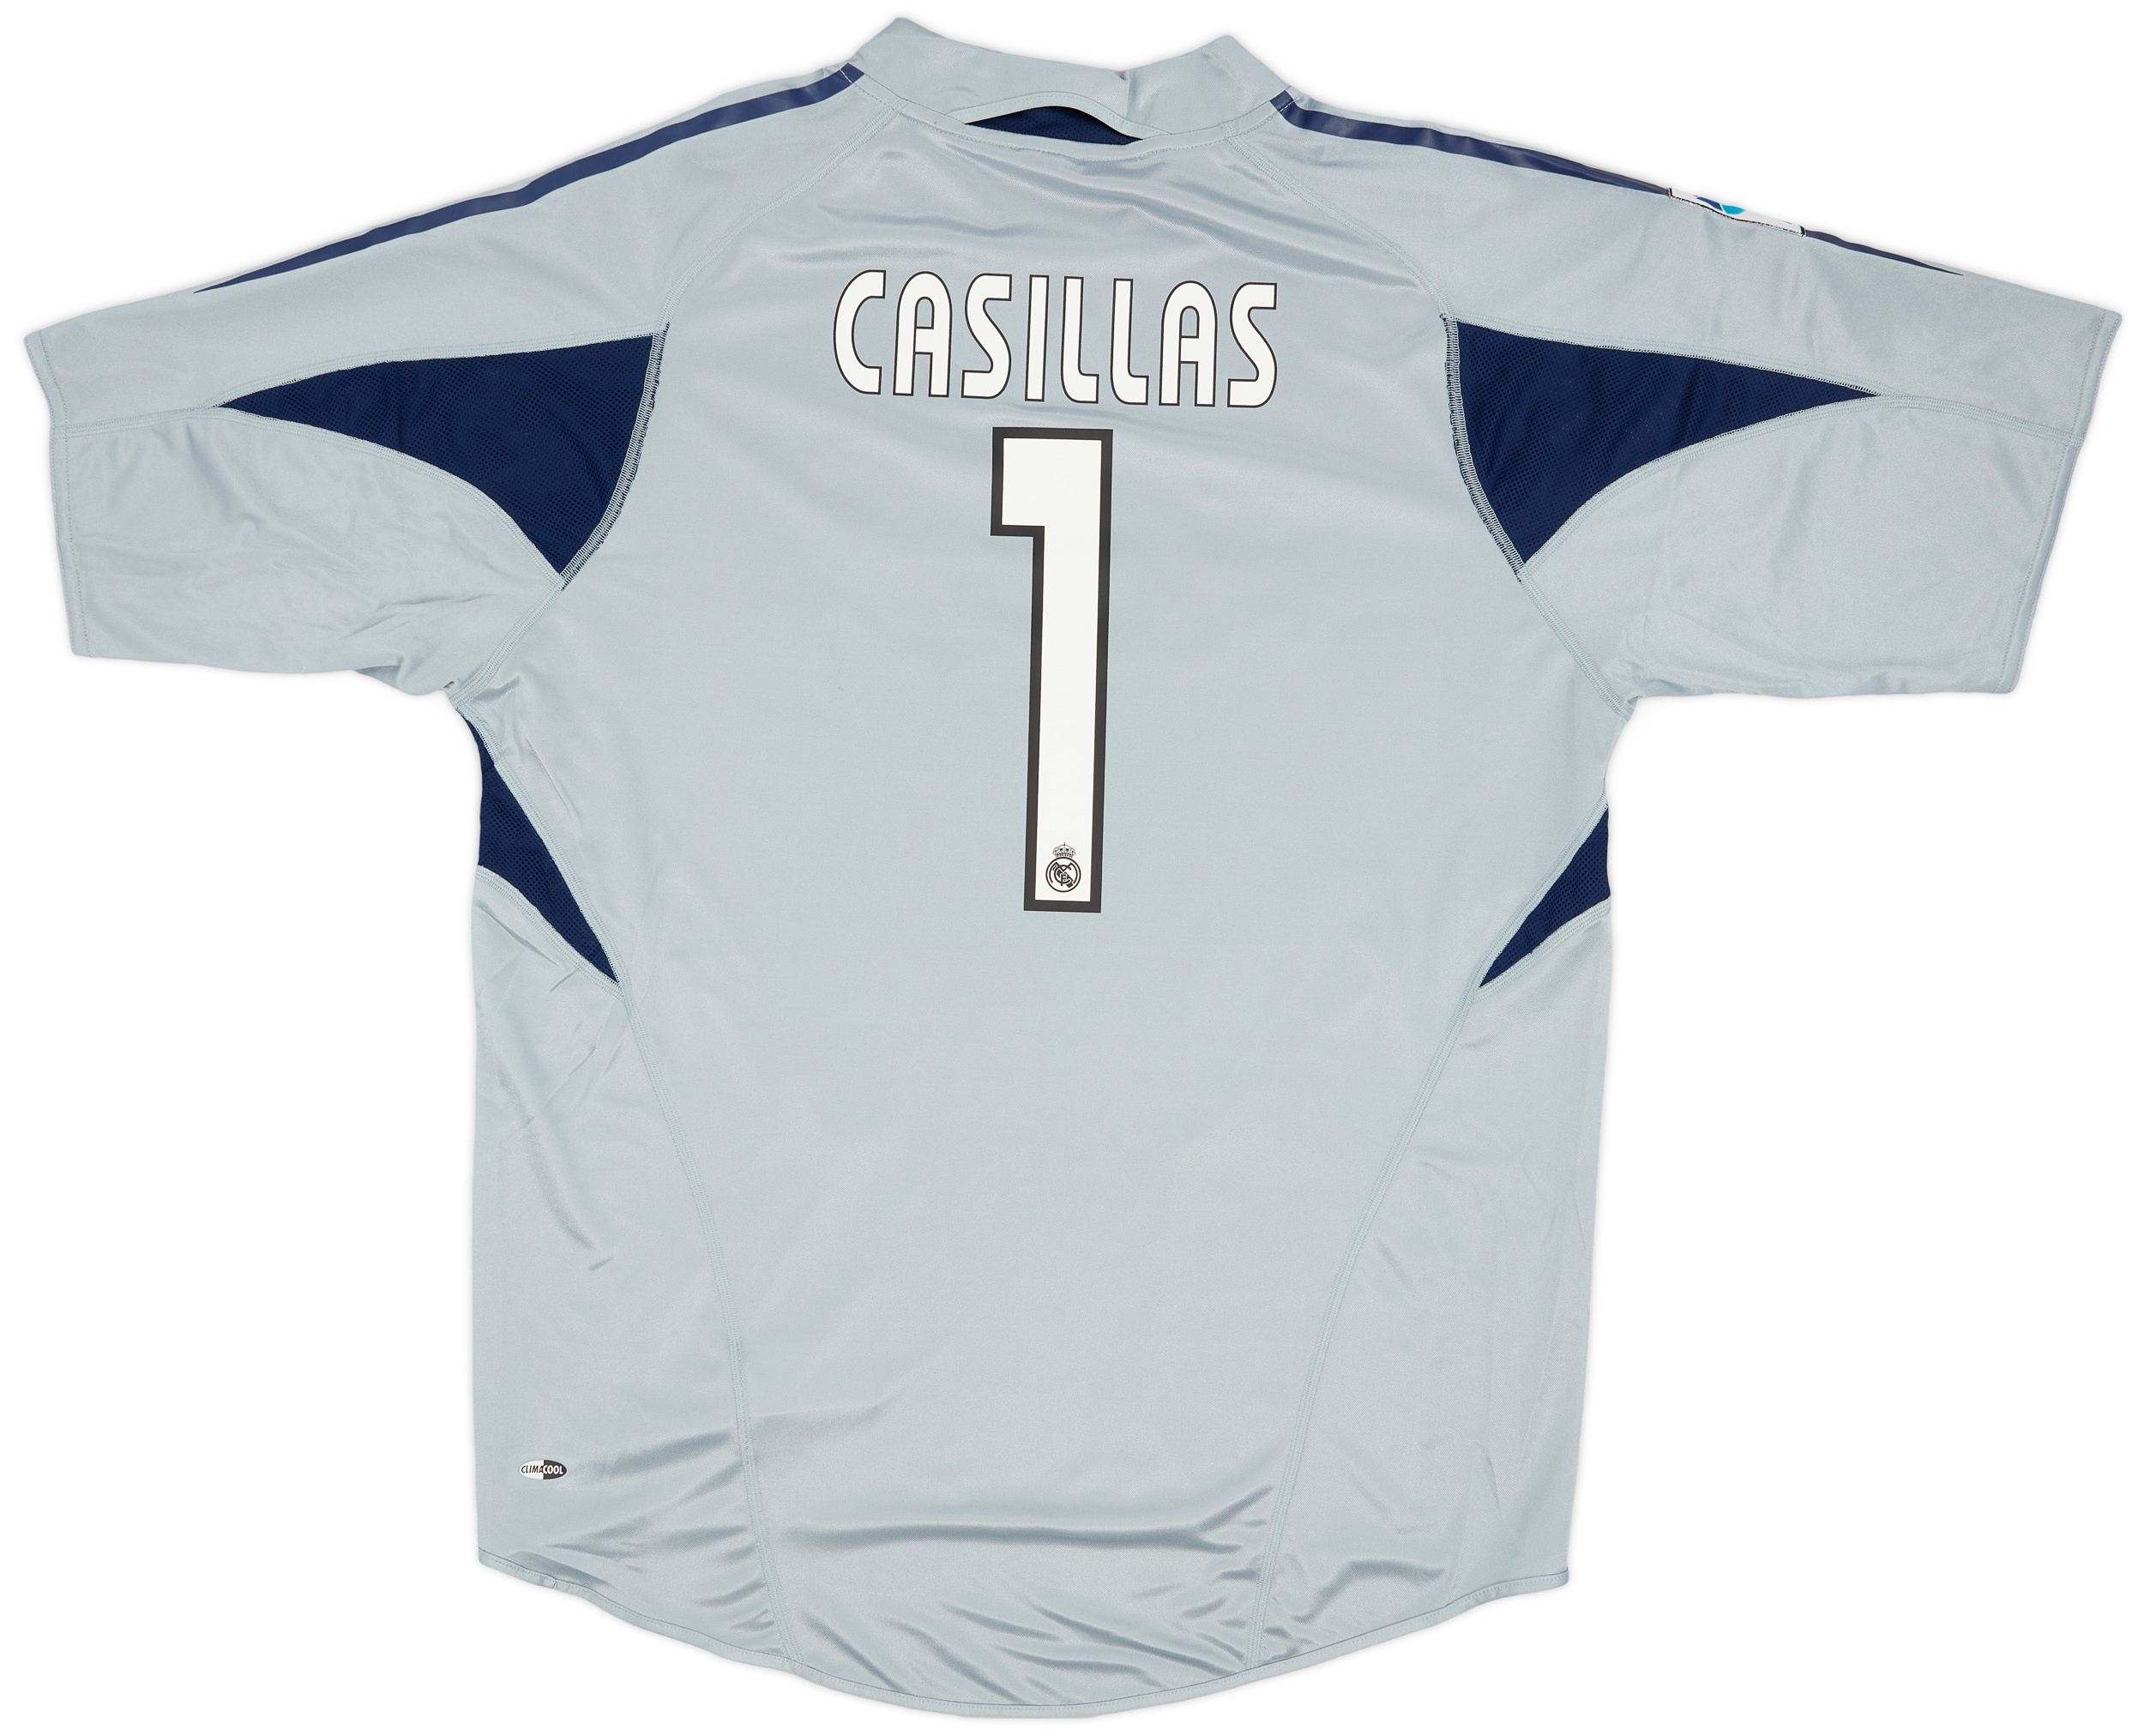 2004-05 Real Madrid GK Shirt ()